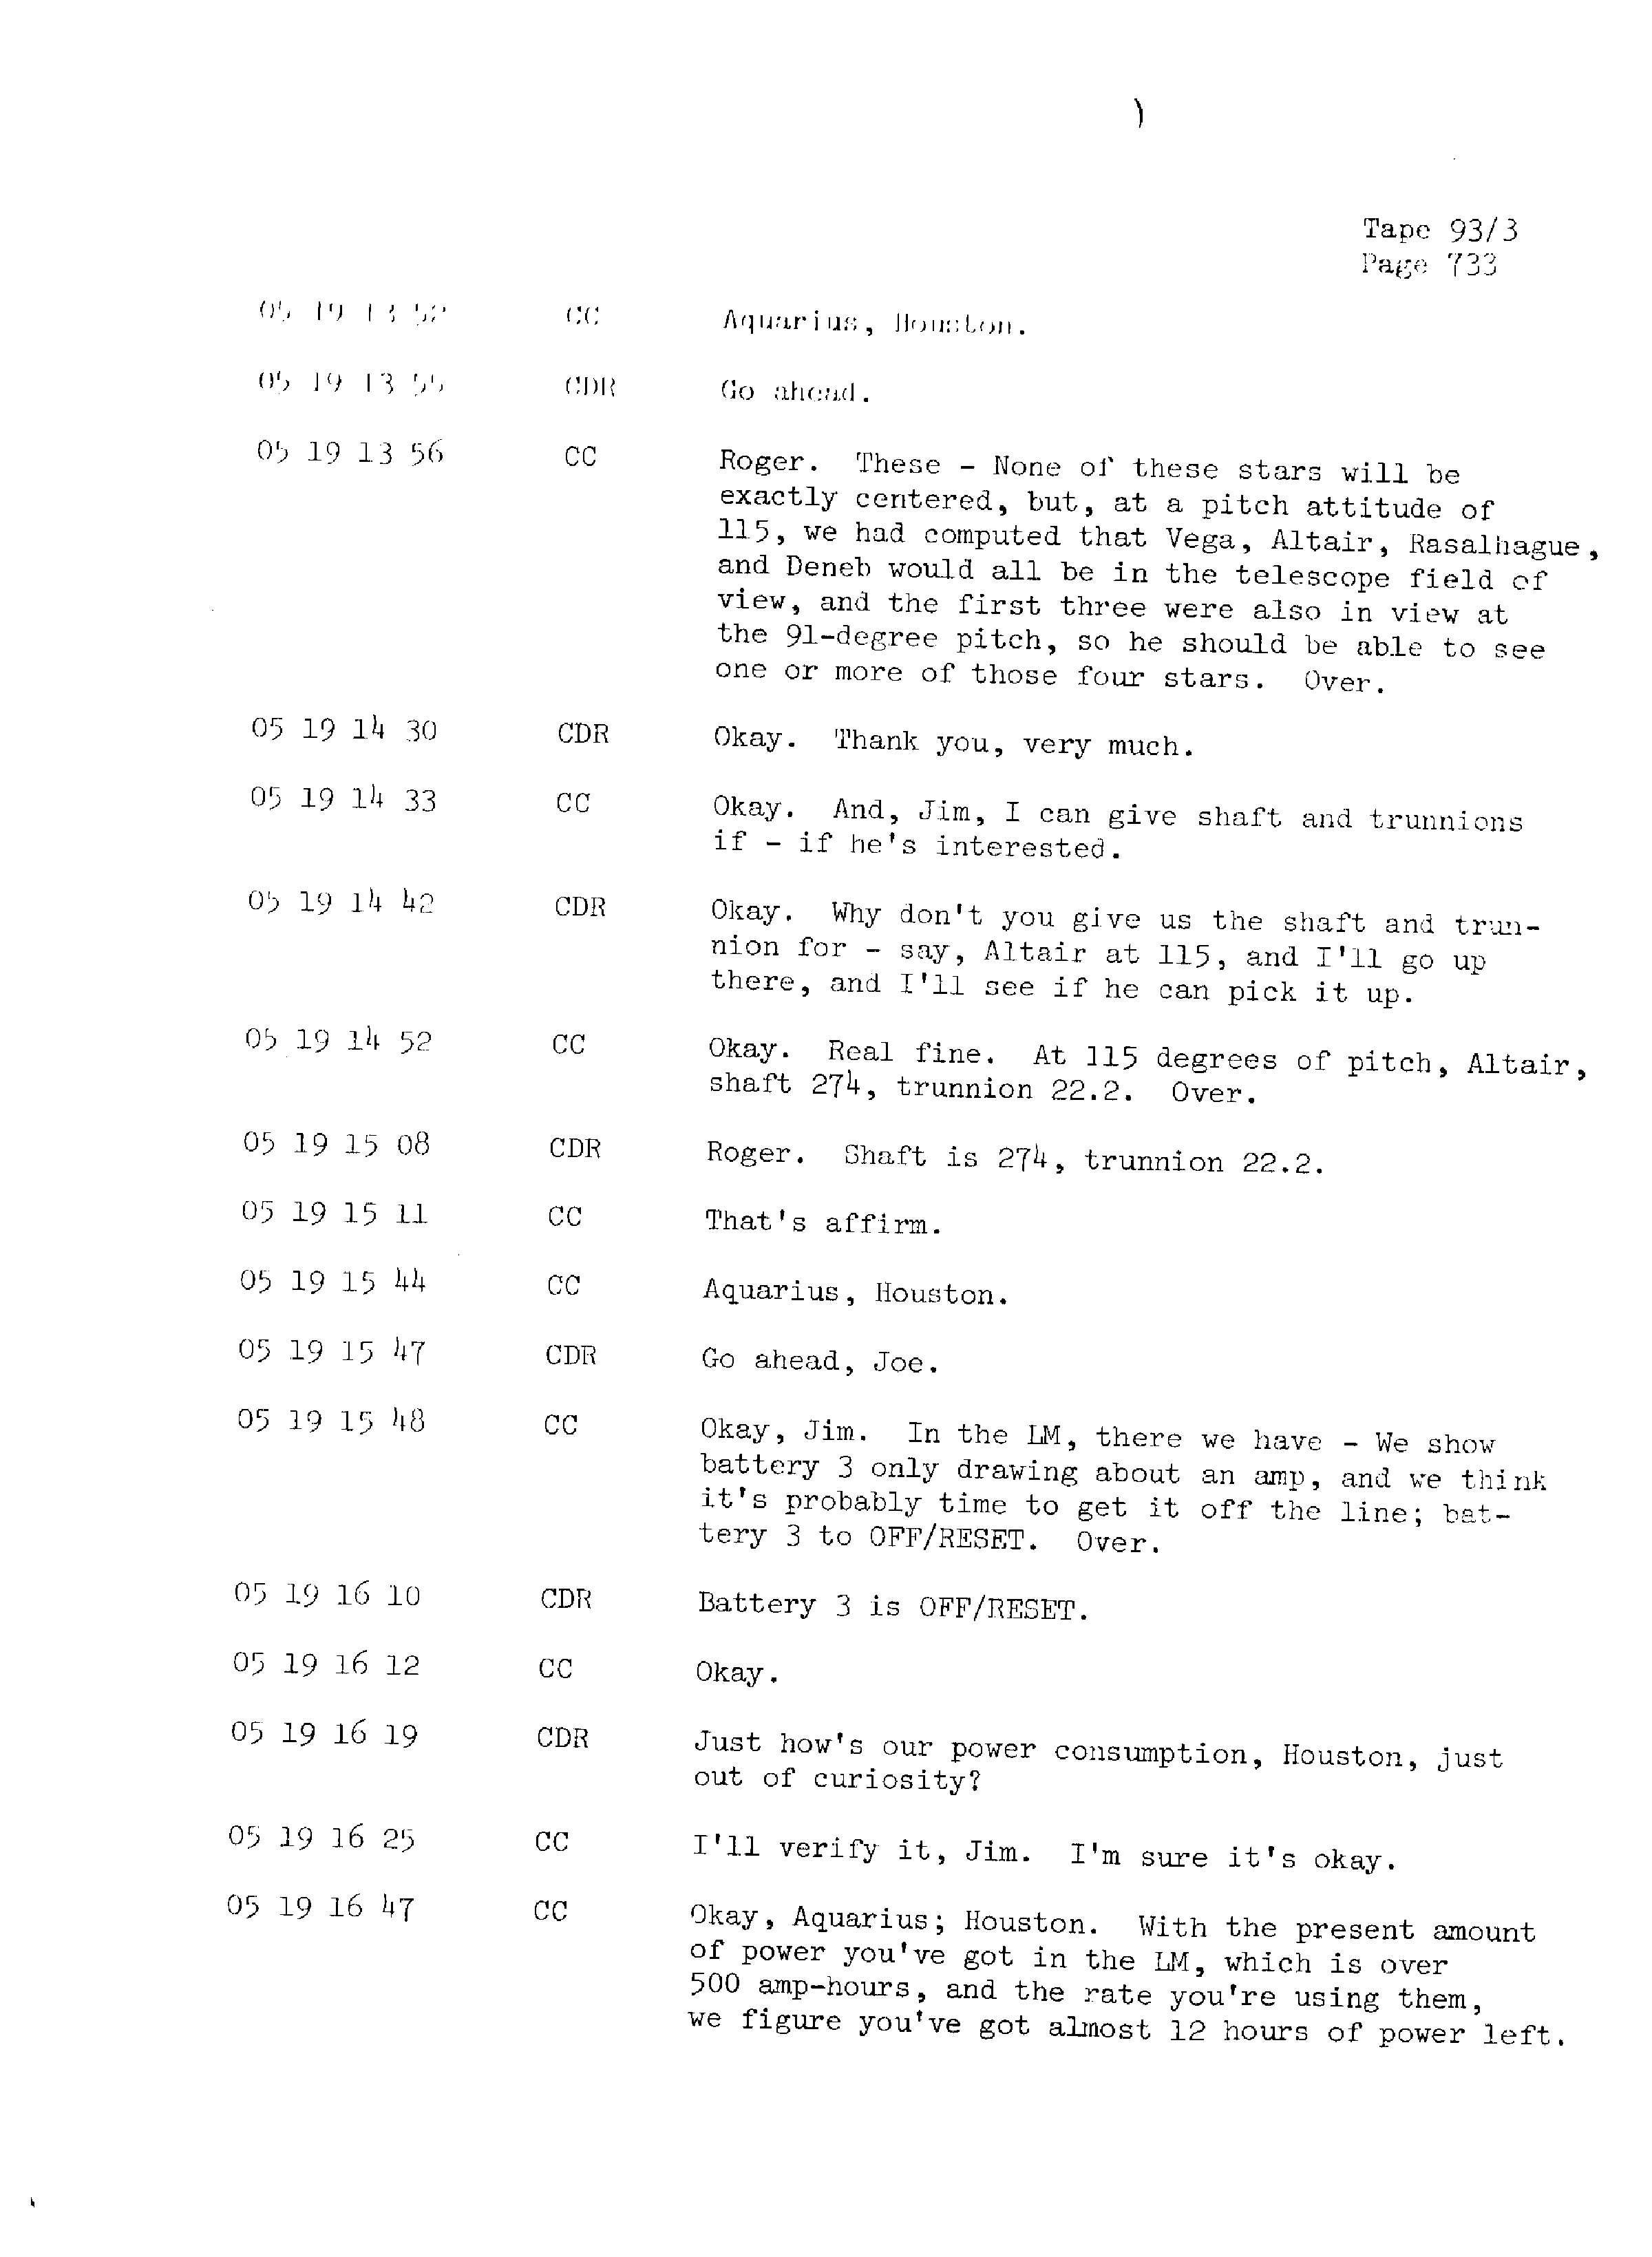 Page 740 of Apollo 13’s original transcript